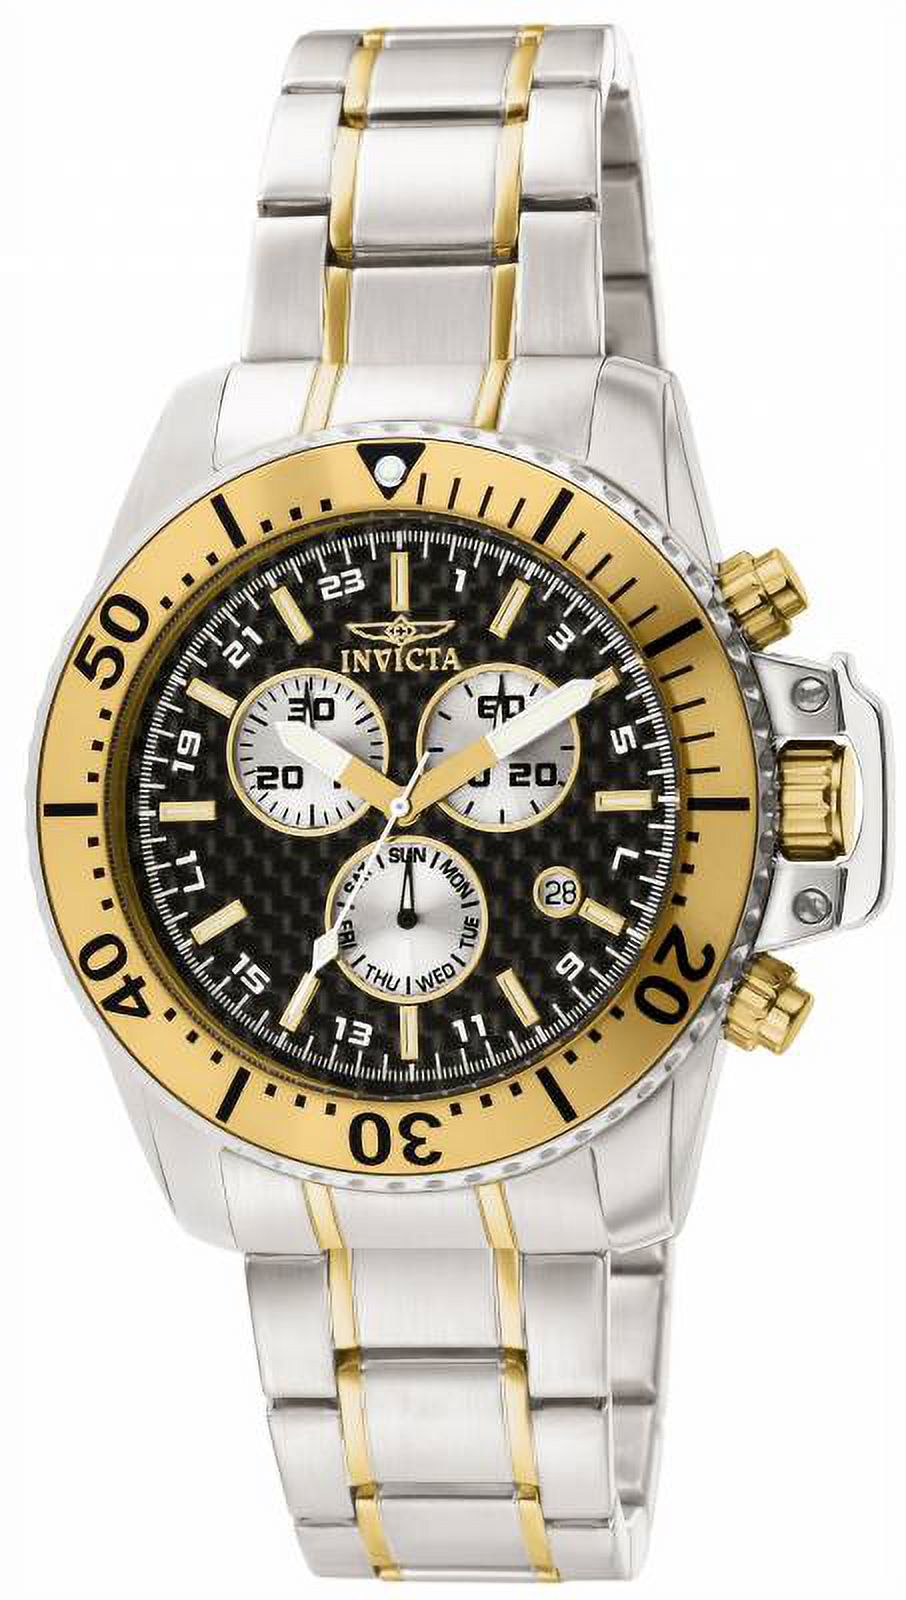 Men's 11285 Pro Diver Quartz Chronograph Black Dial Watch - image 1 of 1